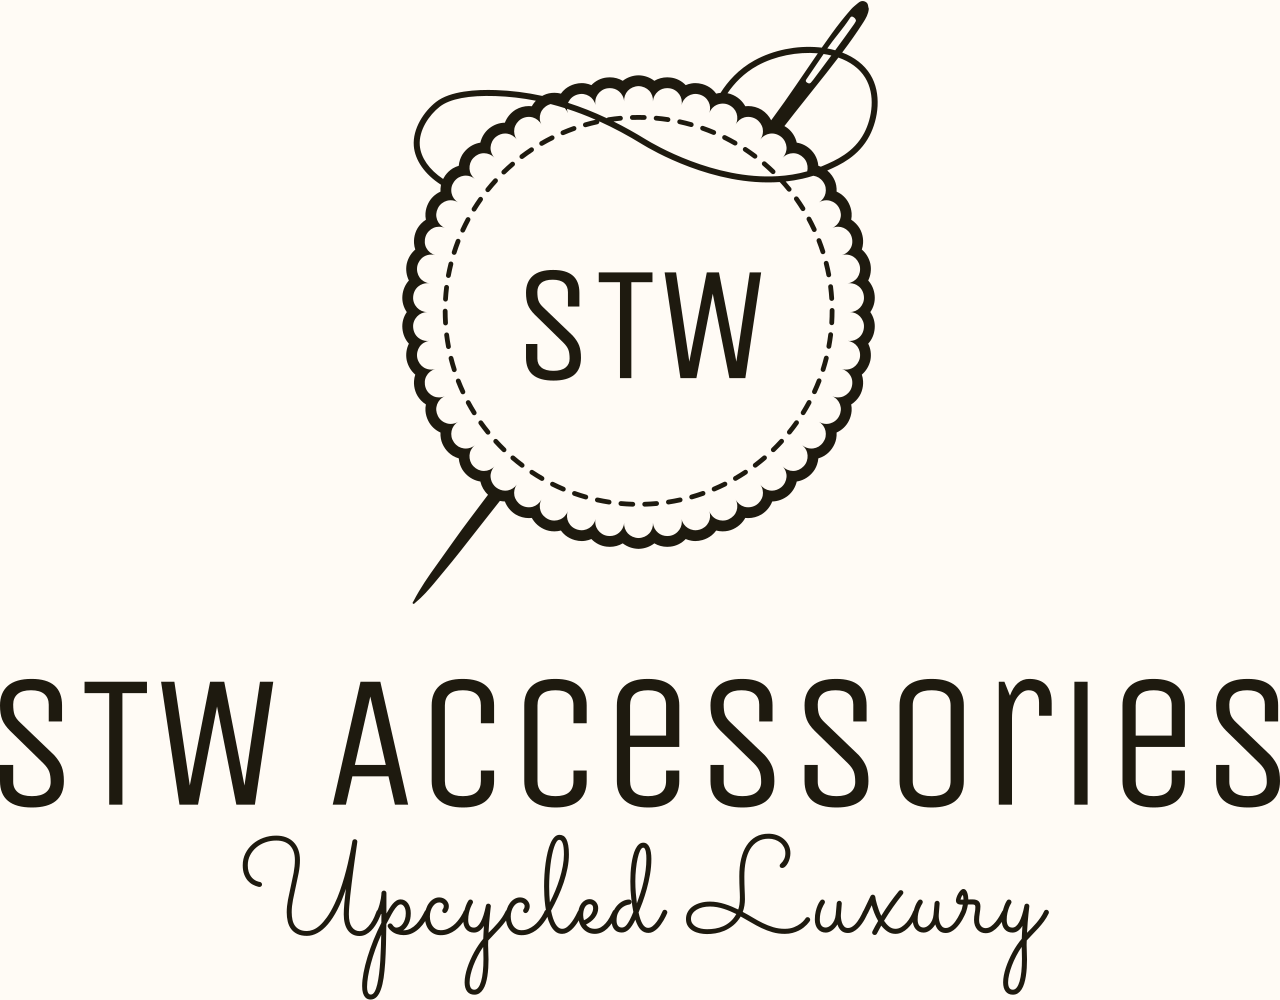 STW Accessories's logo